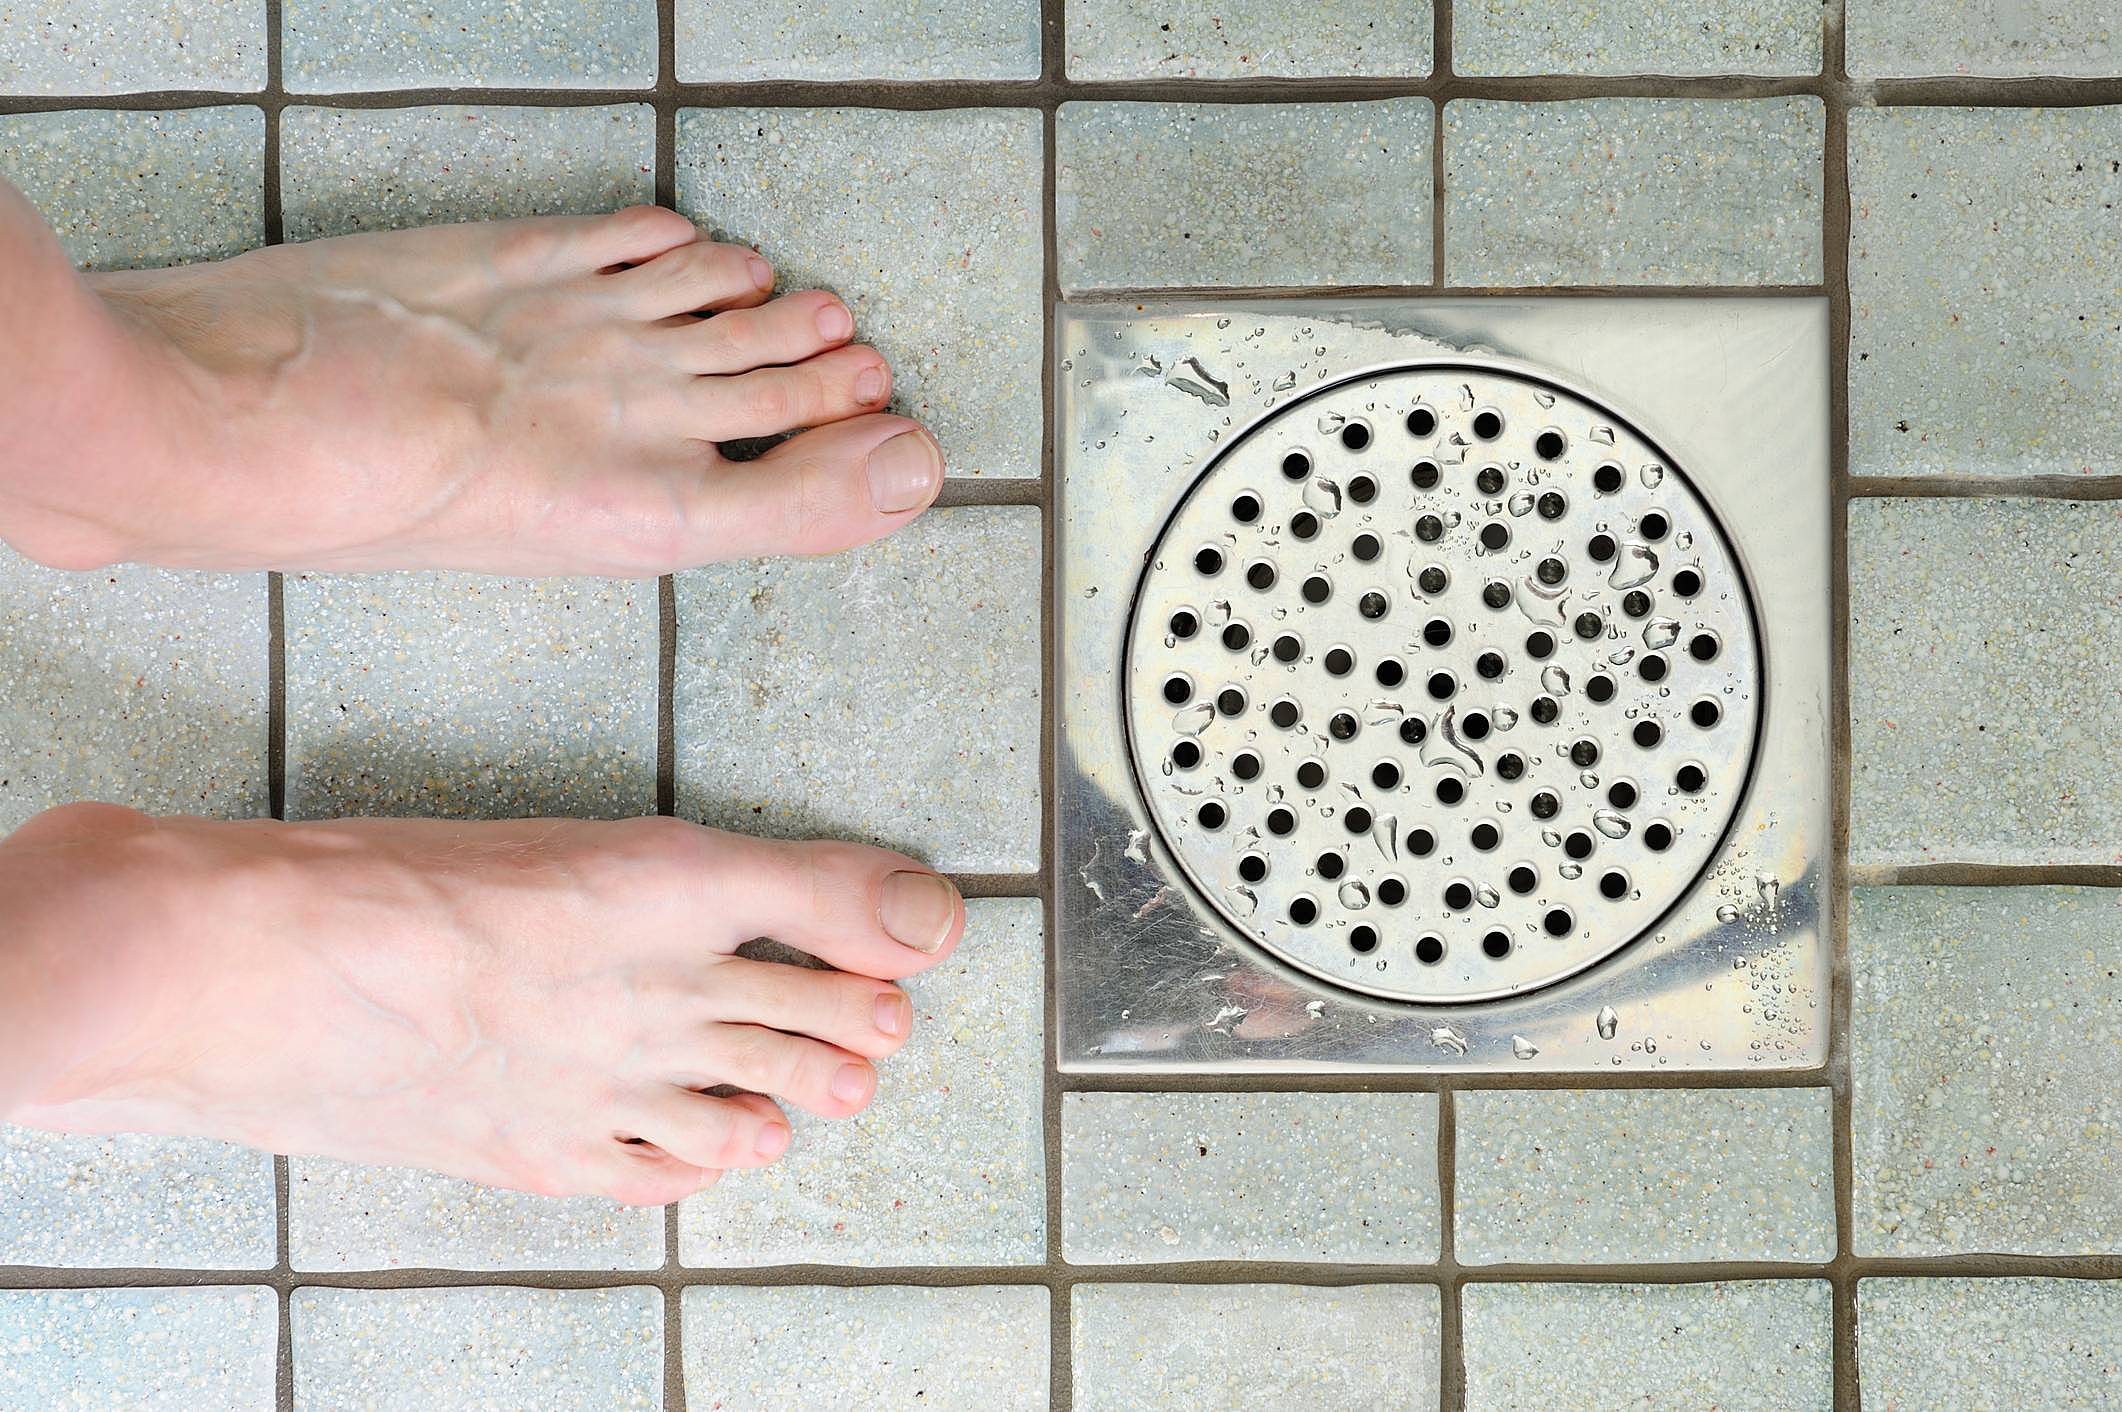 Ralo do banheiro entupido: 5 truques caseiros rápidos para resolver esse problema